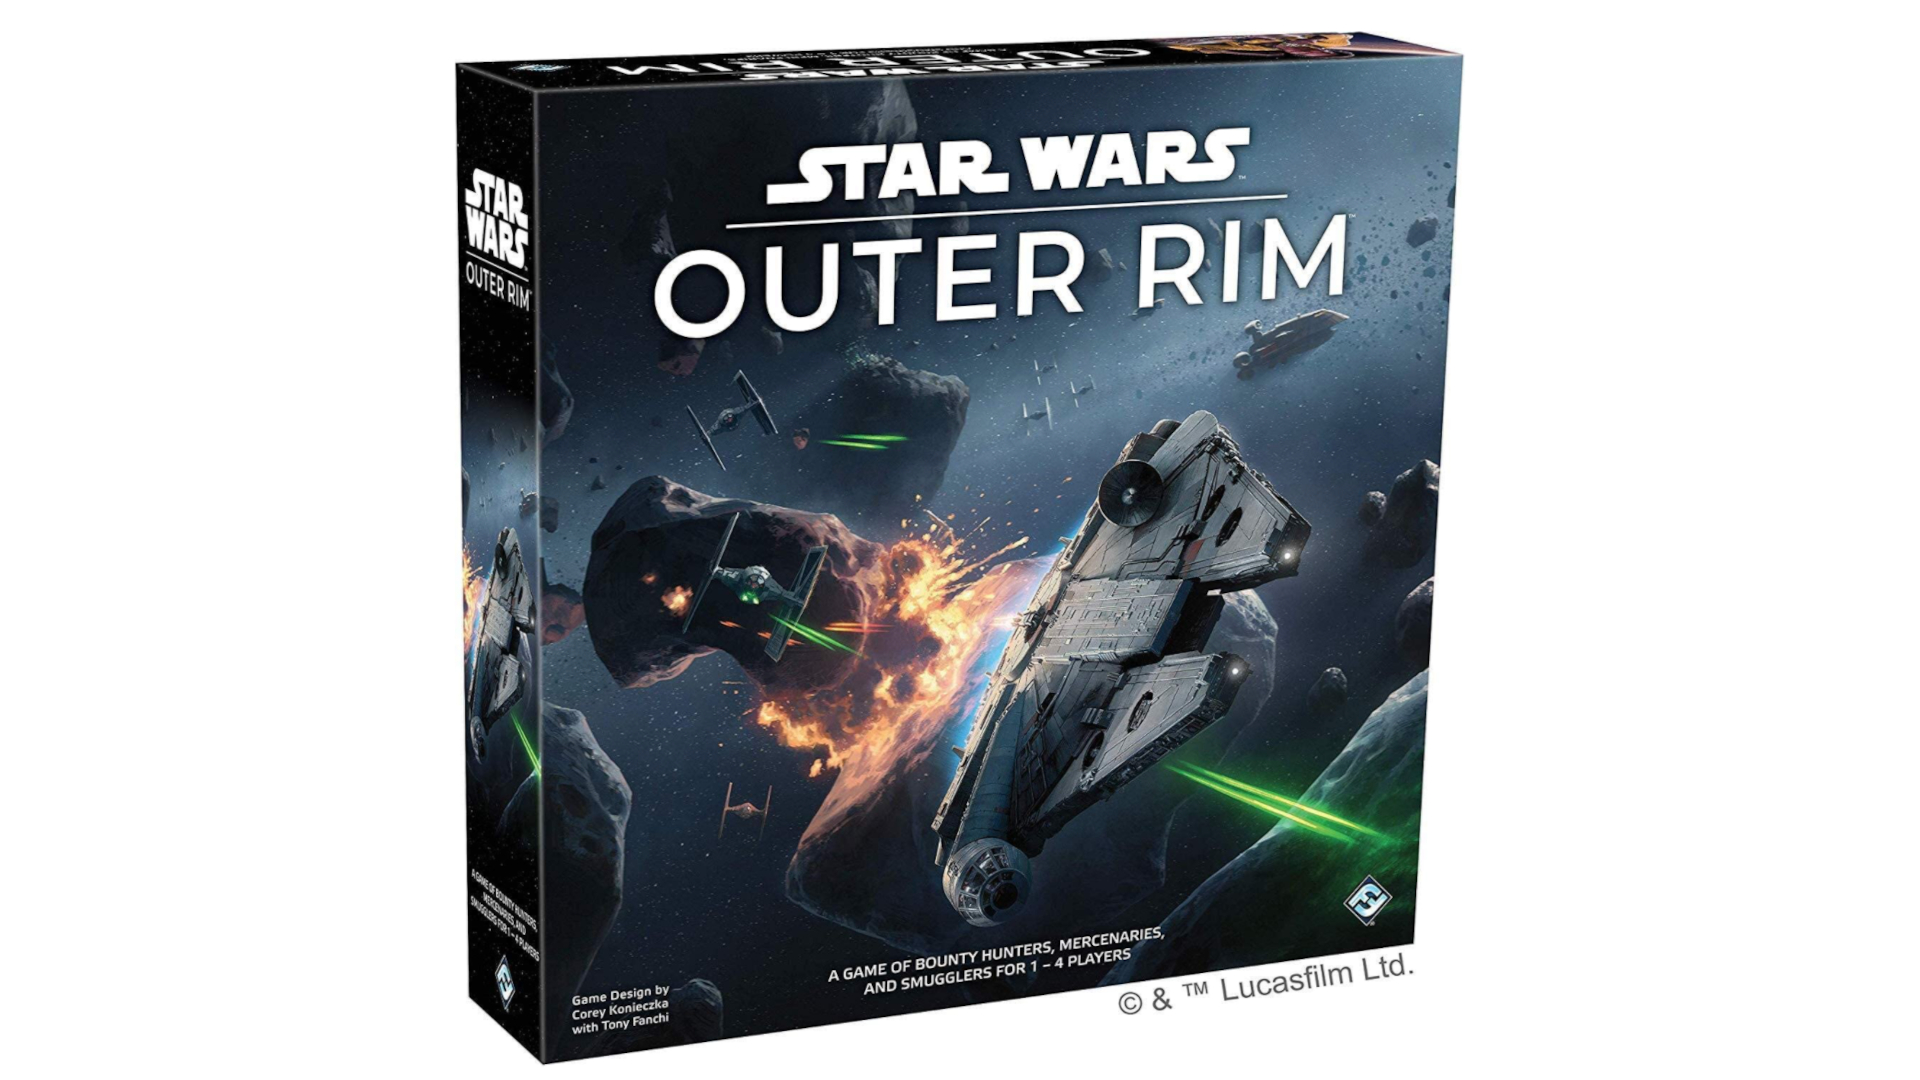 Star Wars: Outer Rim (Final Flight, 2019)